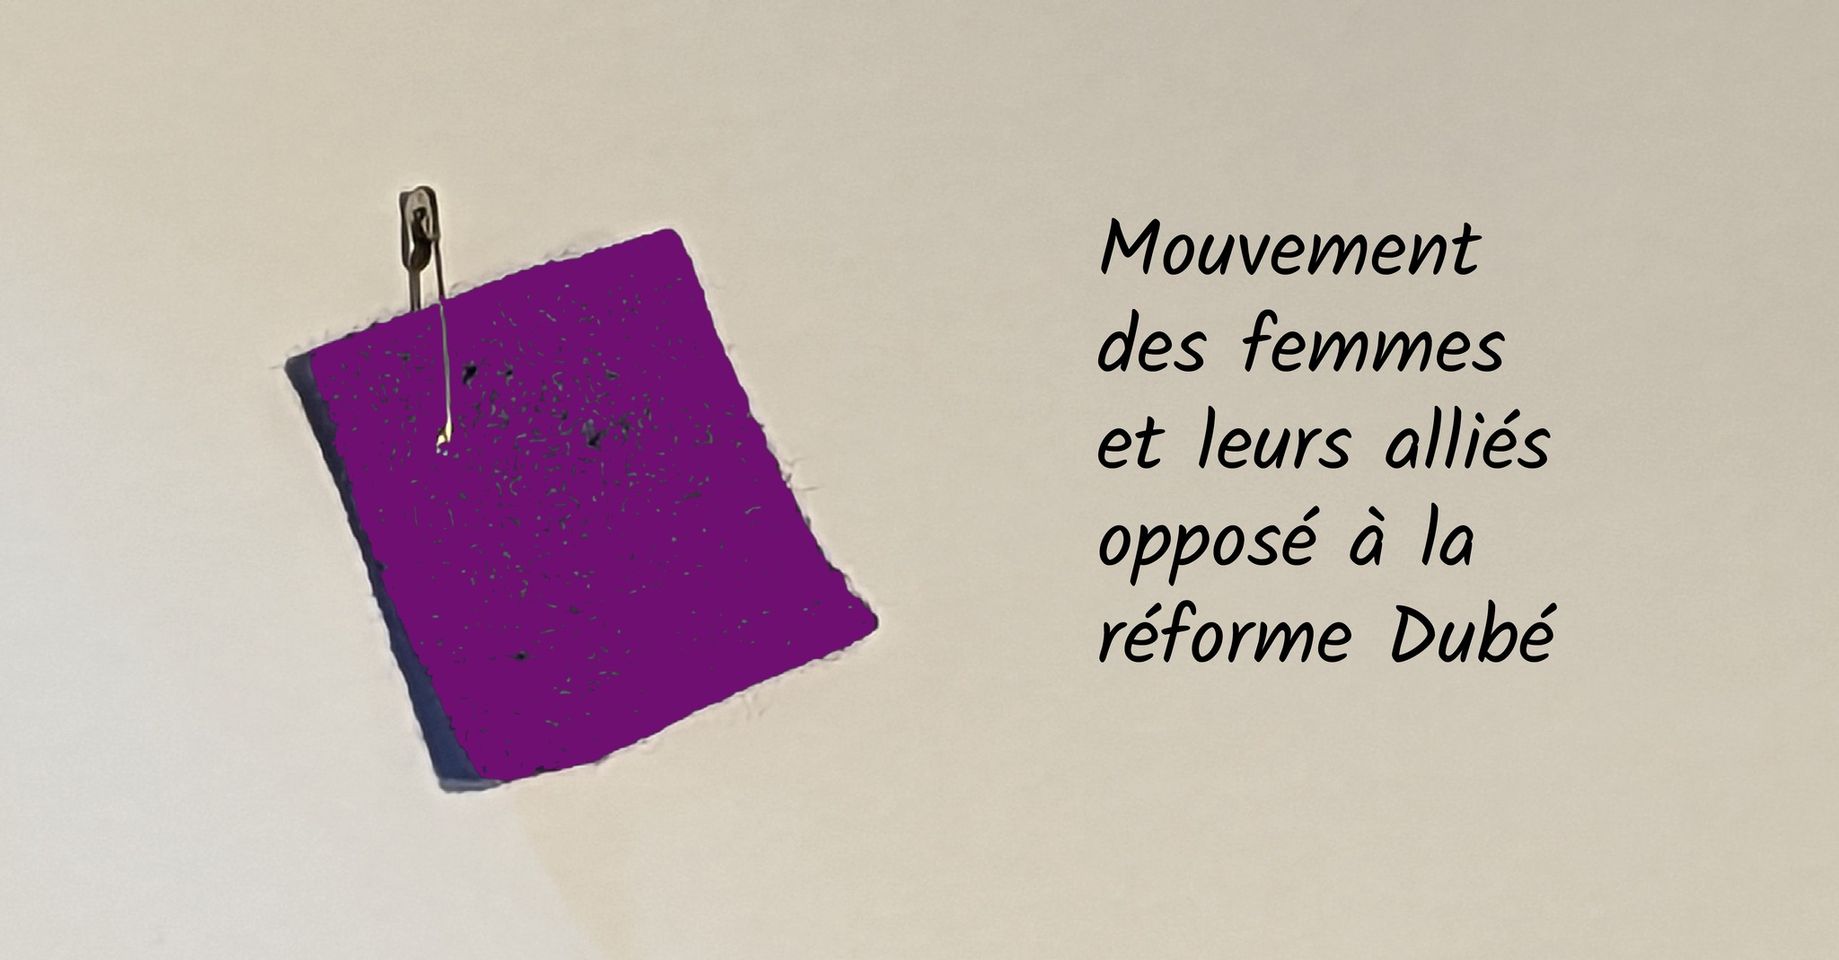 Le coup d’envoi d’un mouvement des femmes contre PL-15 : ON PORTE LE CARRÉ MAUVE!